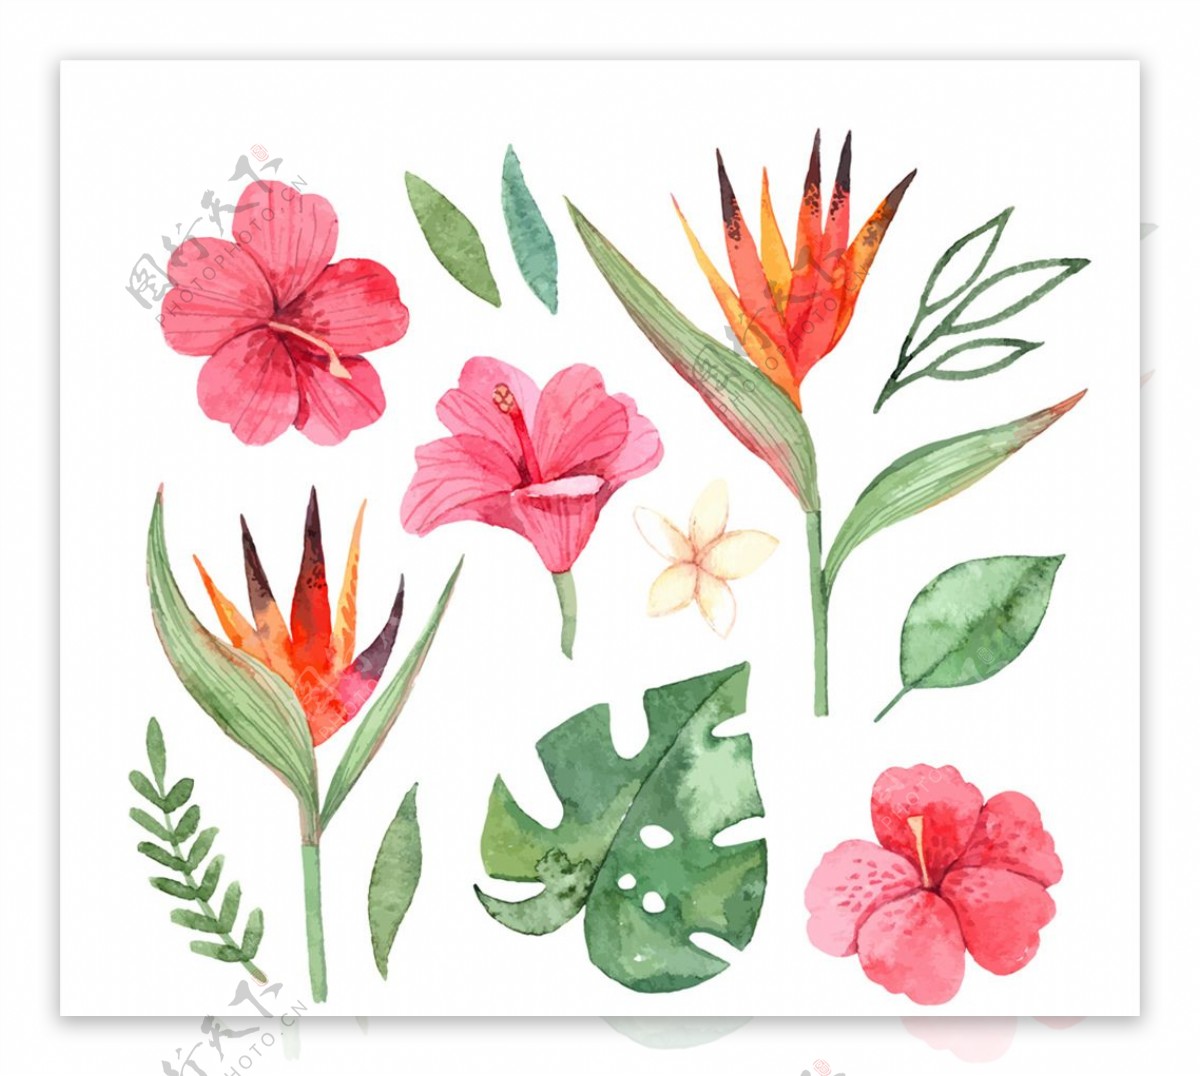 彩绘热带花卉和叶子